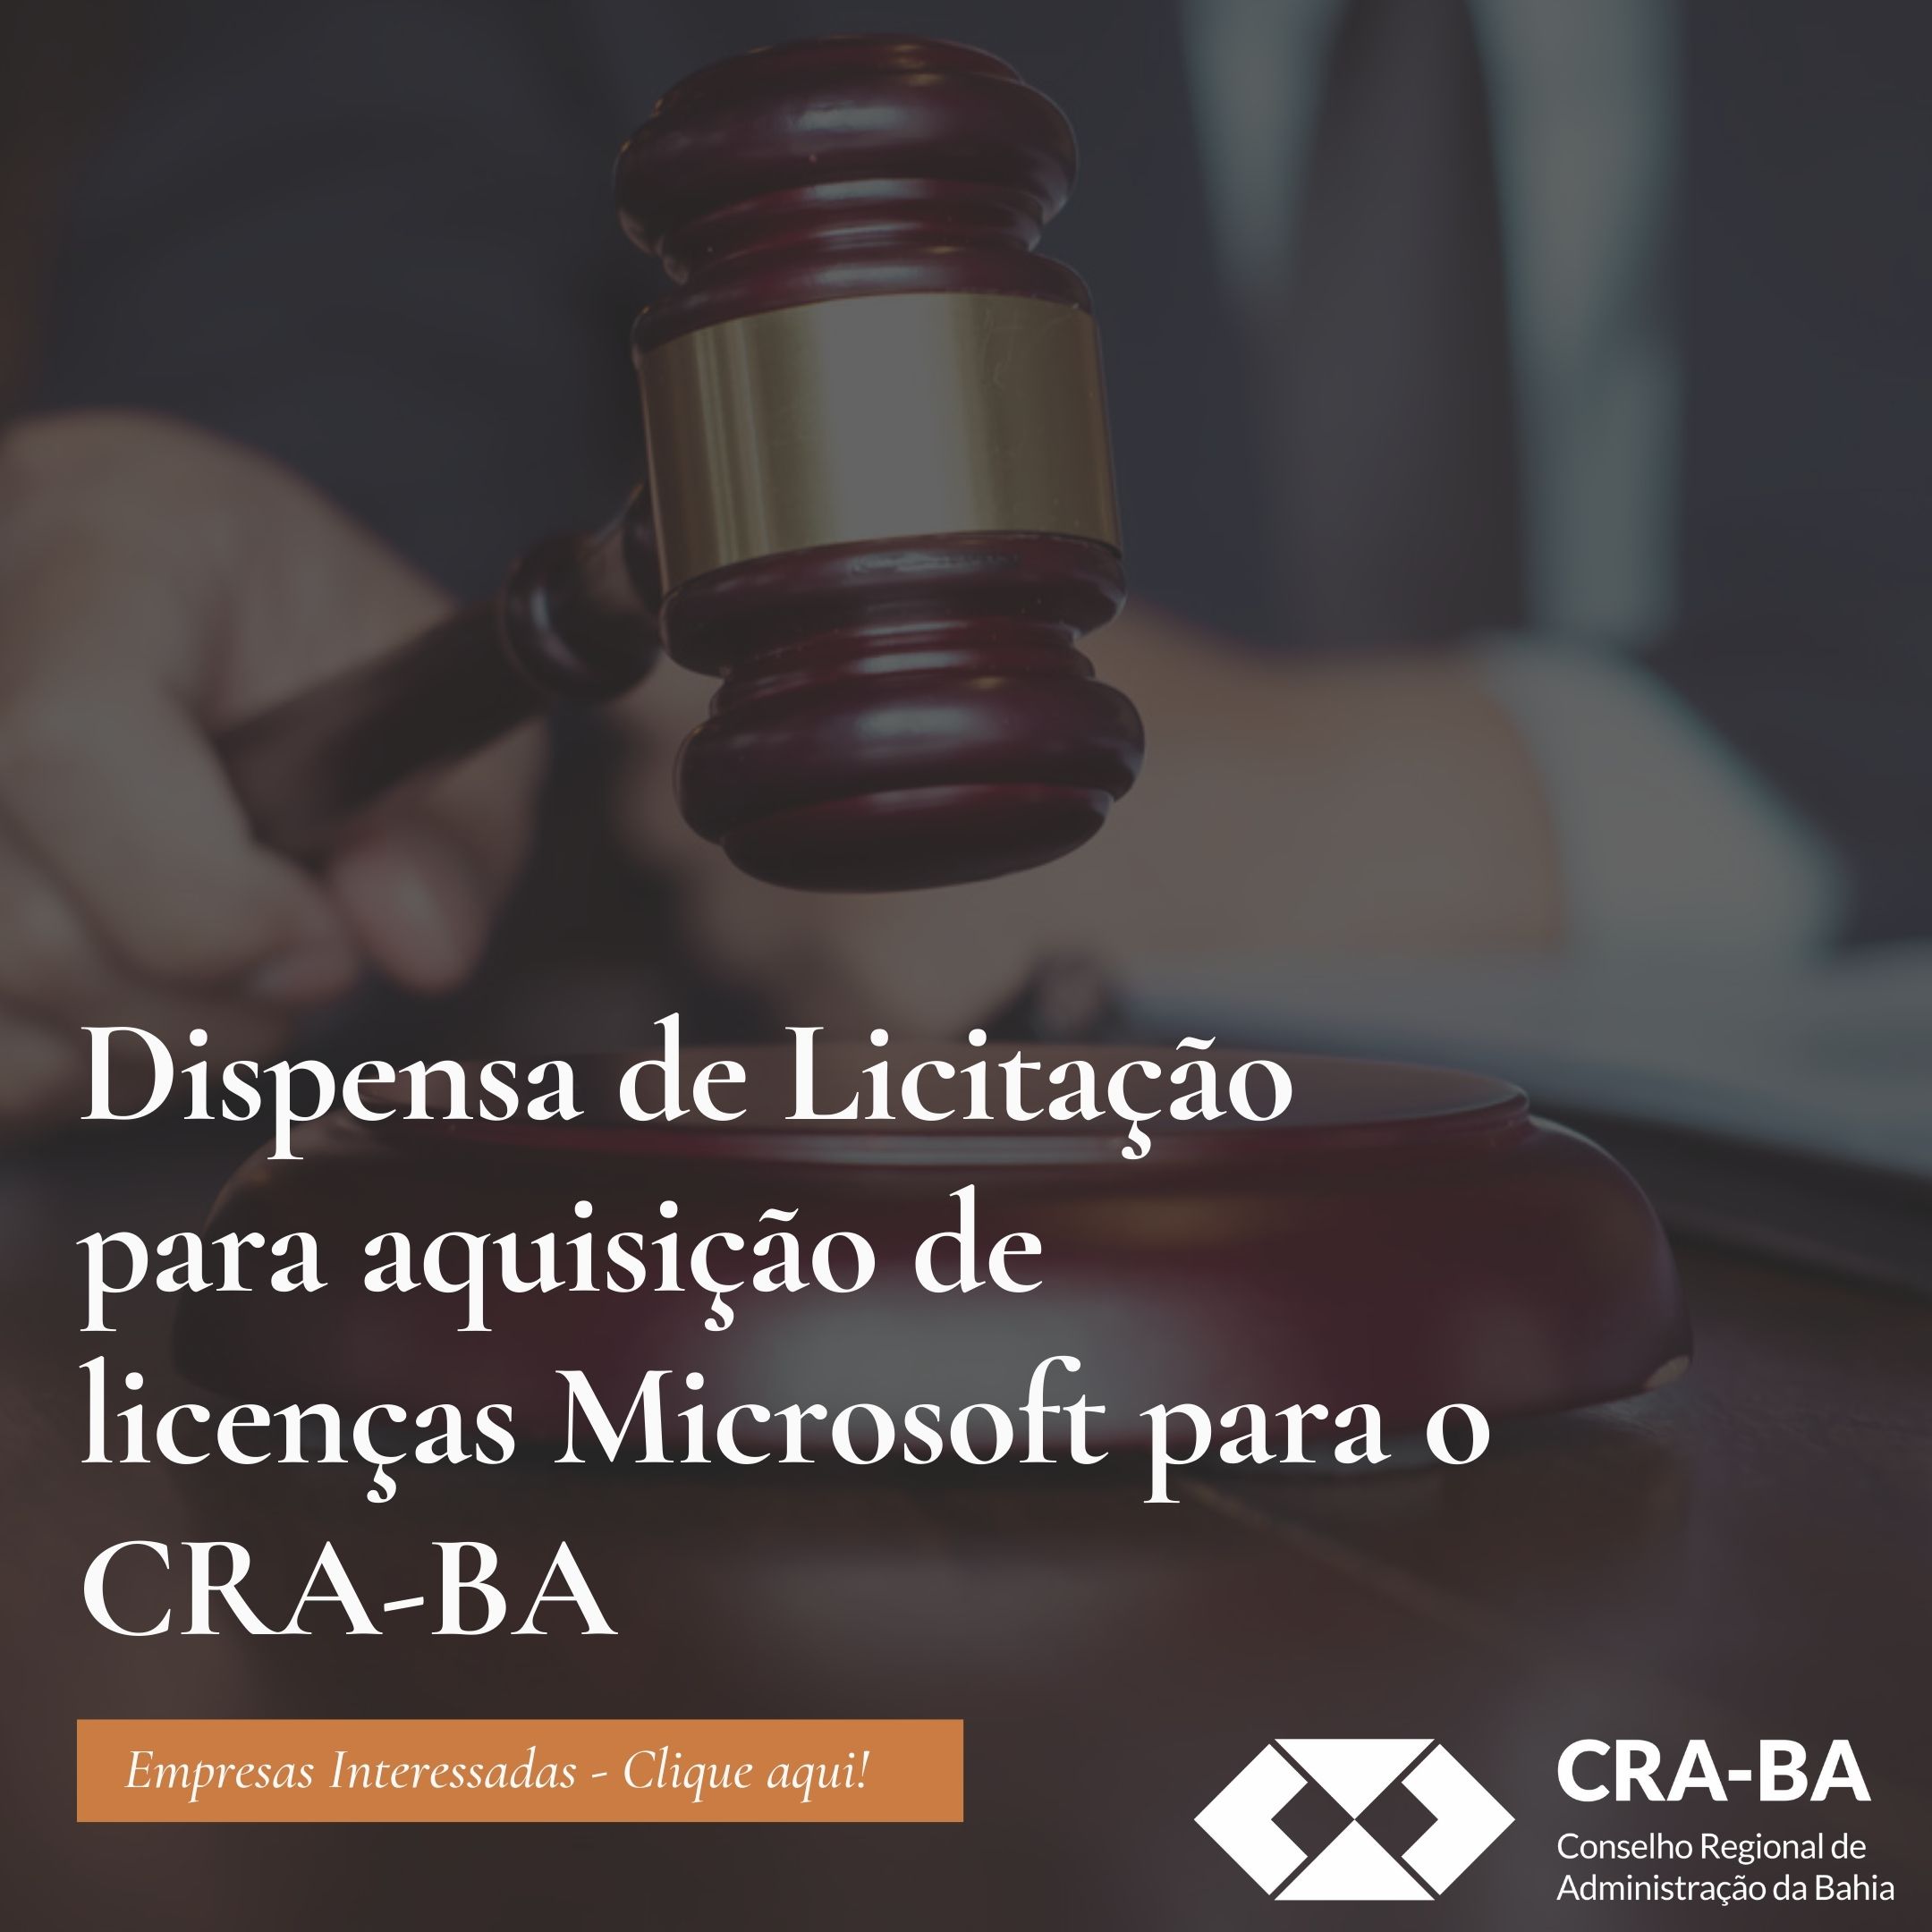 You are currently viewing Dispensa de Licitação para aquisição de licenças Microsoft para o CRA-BA